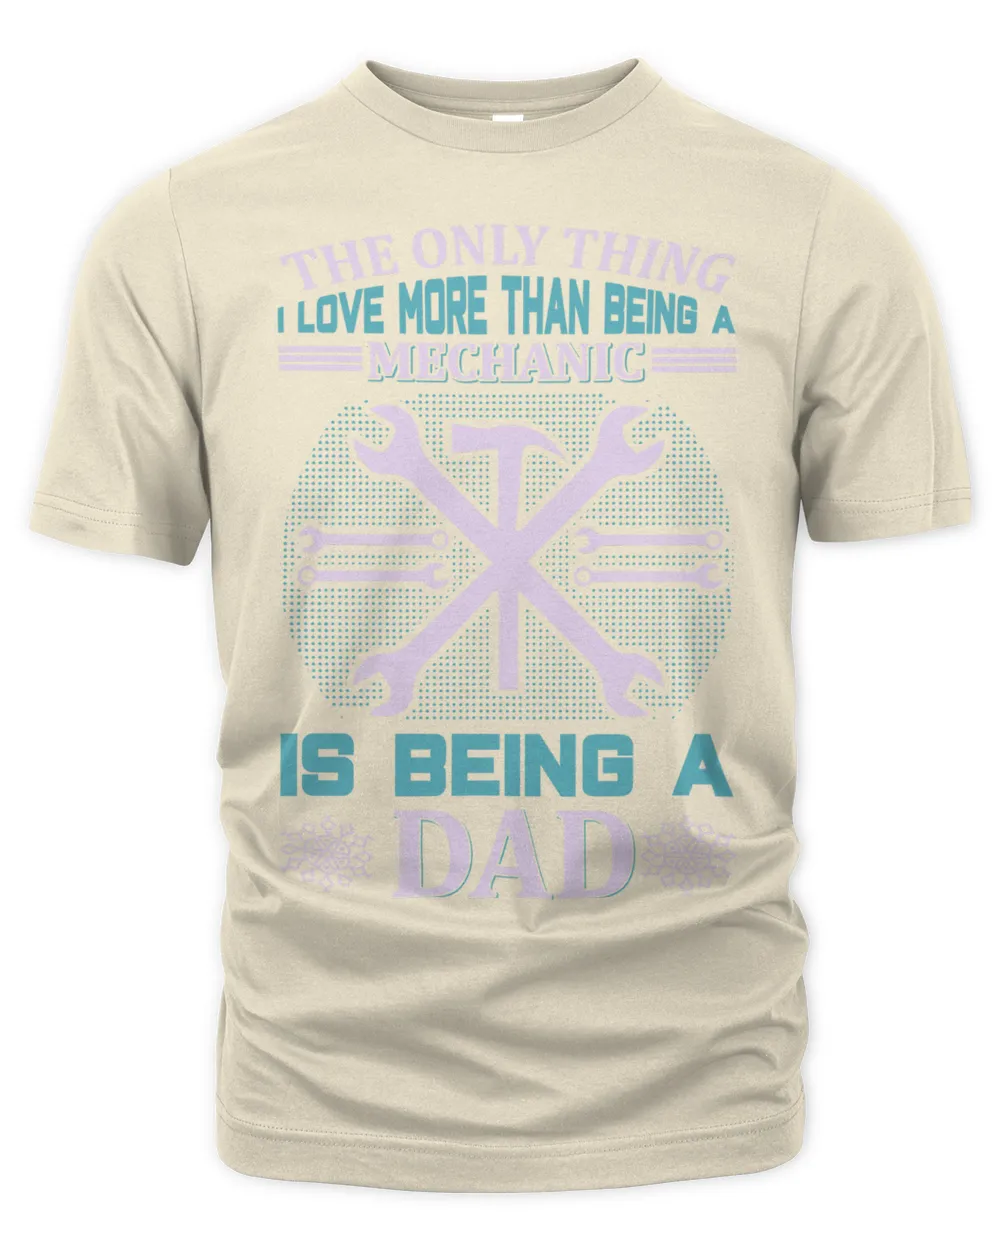 Father's Day Gifts, Father's Day Shirts, Father's Day Gift Ideas, Father's Day Gifts 2022, Gifts for Dad (74)